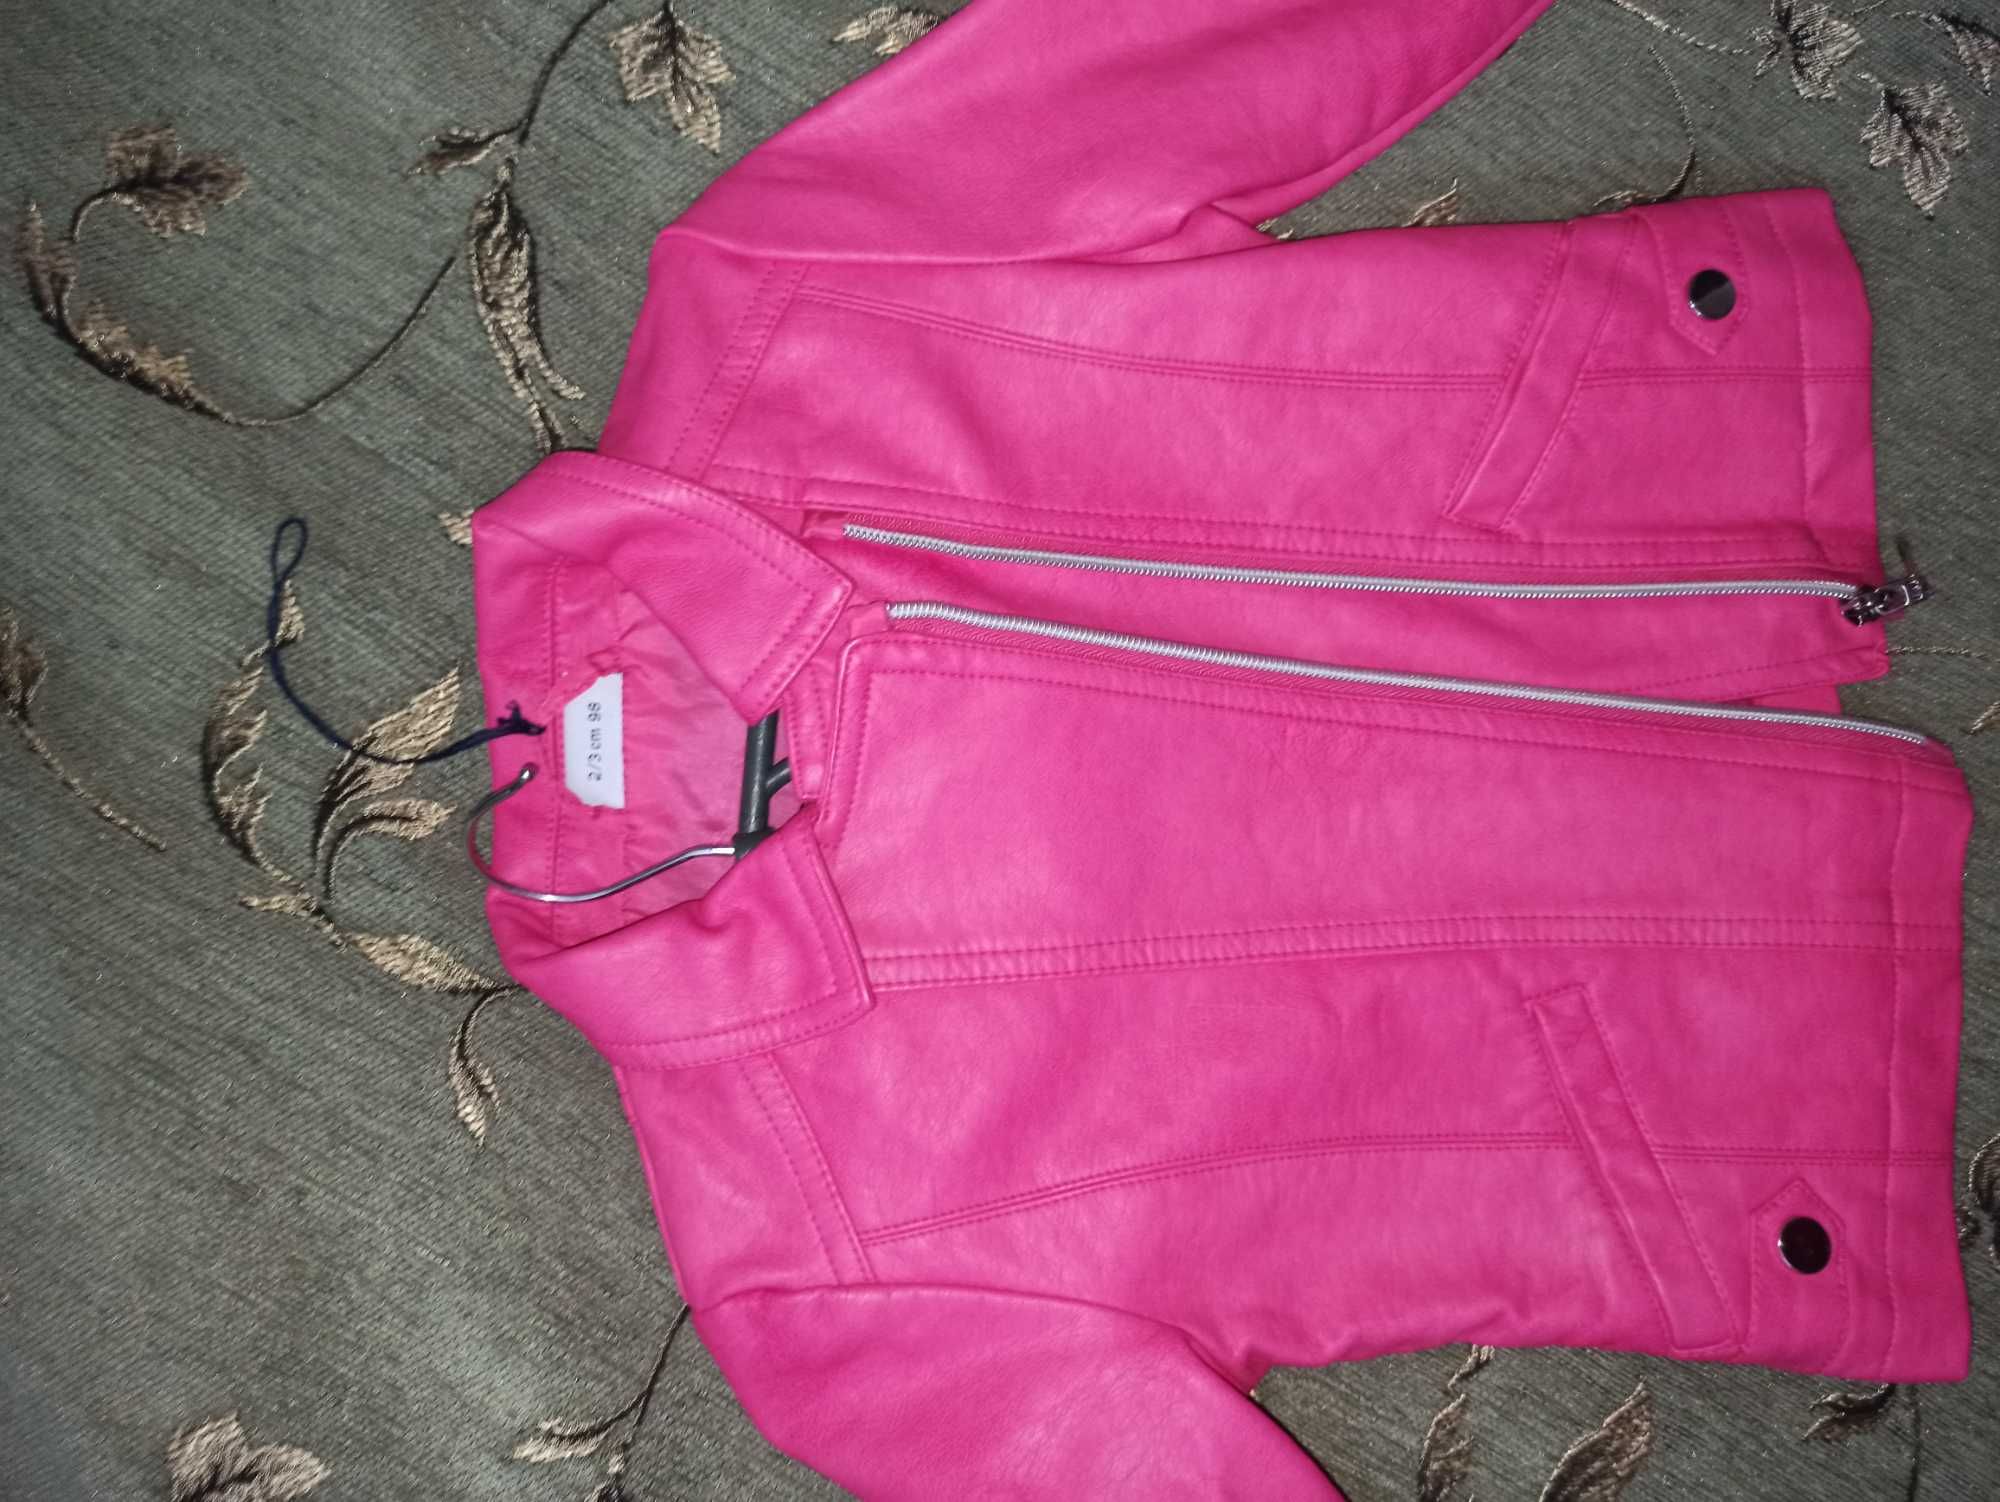 Косуха рост 98 розовая кожаная куртка кожанка blukids курточка жакет